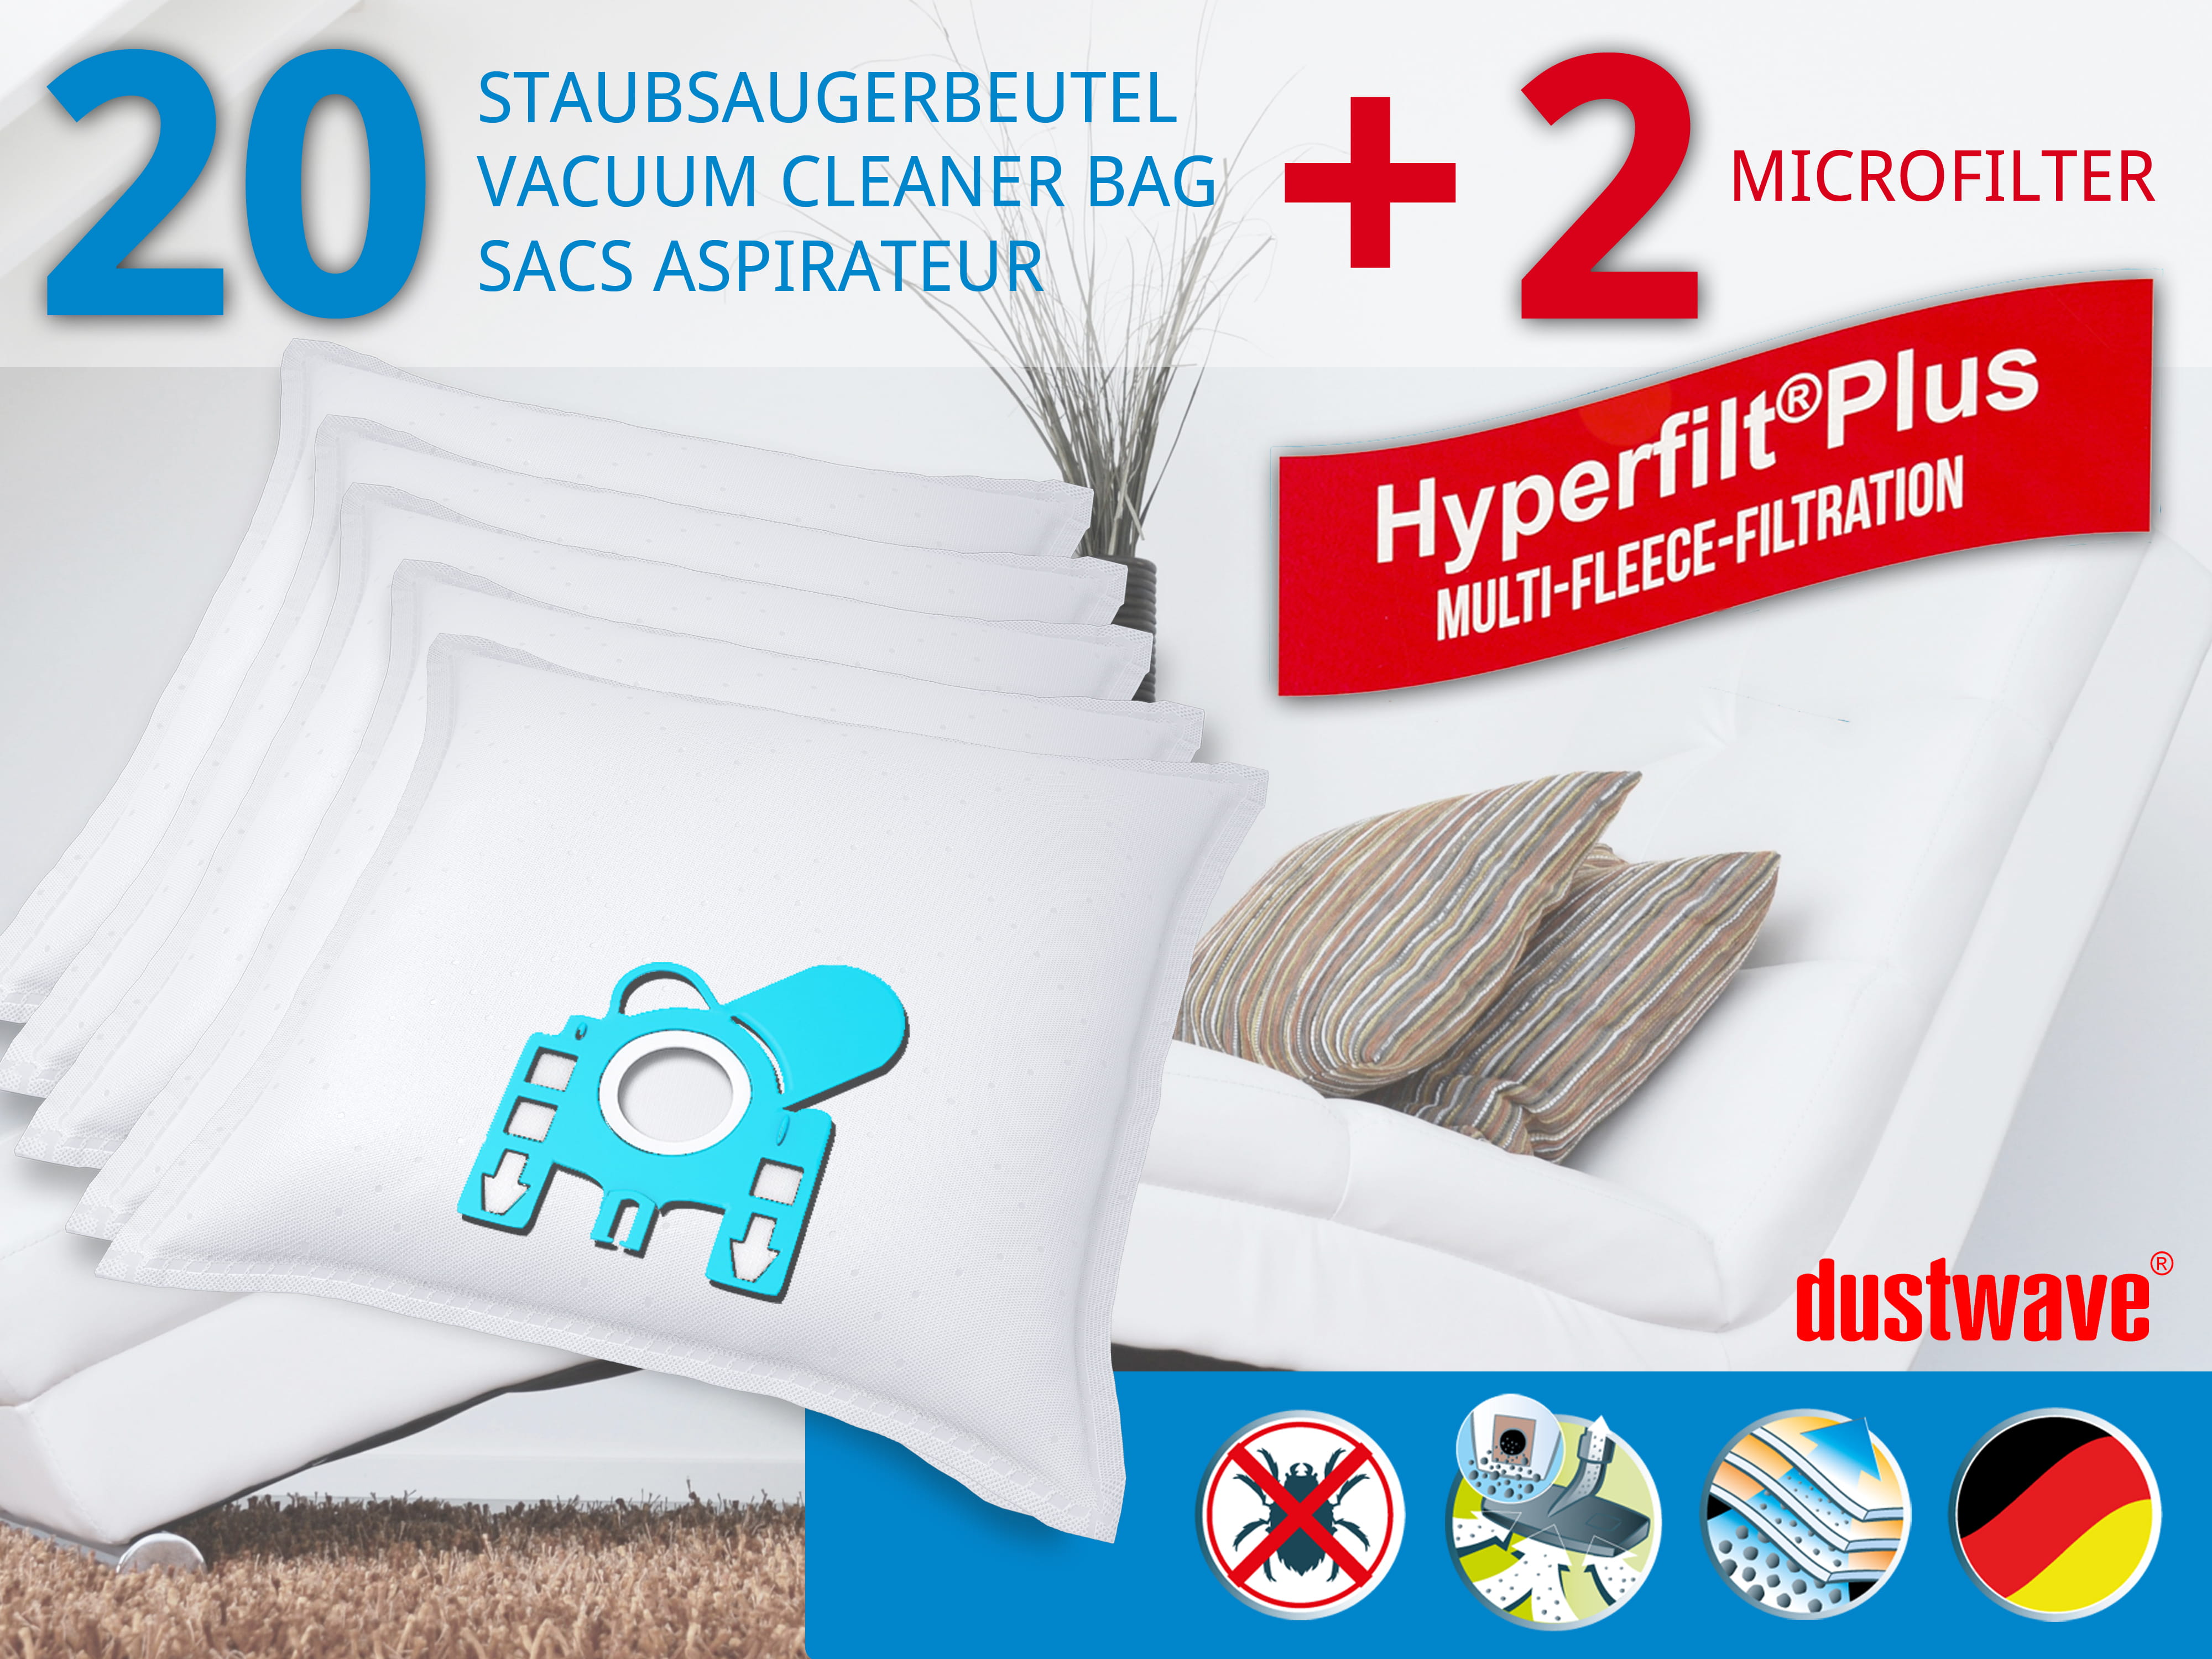 Dustwave® 20 Staubsaugerbeutel für Miele S406i / S 406 i - hocheffizient, mehrlagiges Mikrovlies mit Hygieneverschluss - Made in Germany